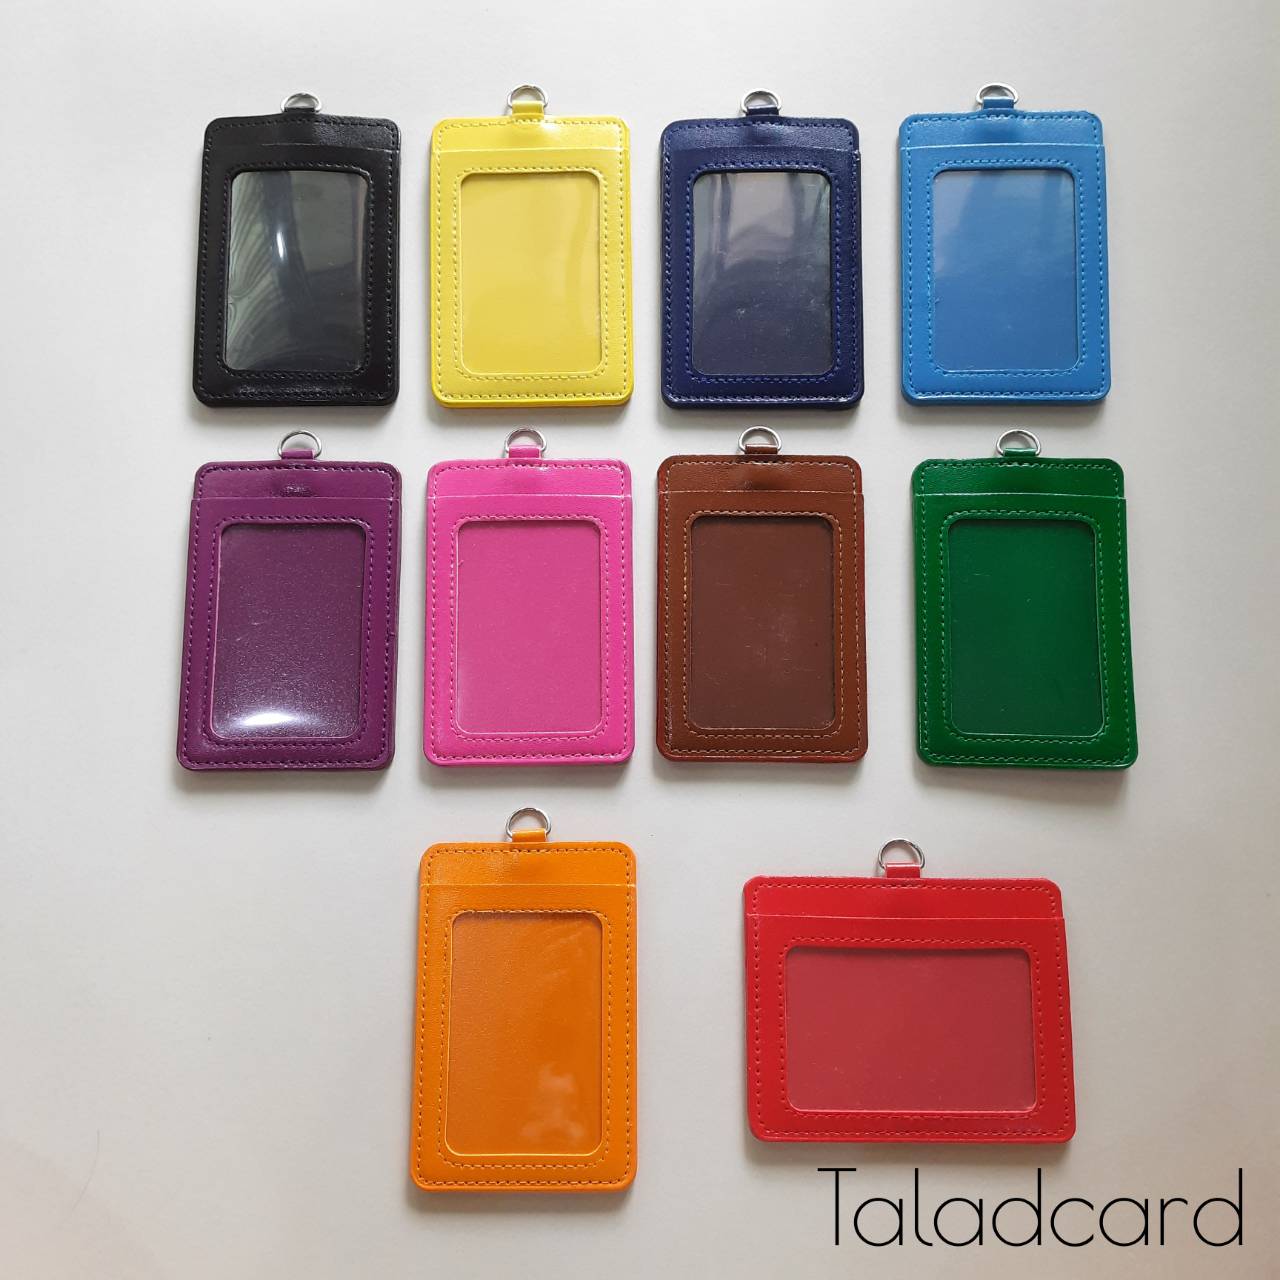 ซองหนังPU ใส่บัตร 2 ช่อง ใส่บัตรได้ทุกประเภท มีให้เลือก 10 สี สำหรับบัตรแนวตั้ง Taladcard